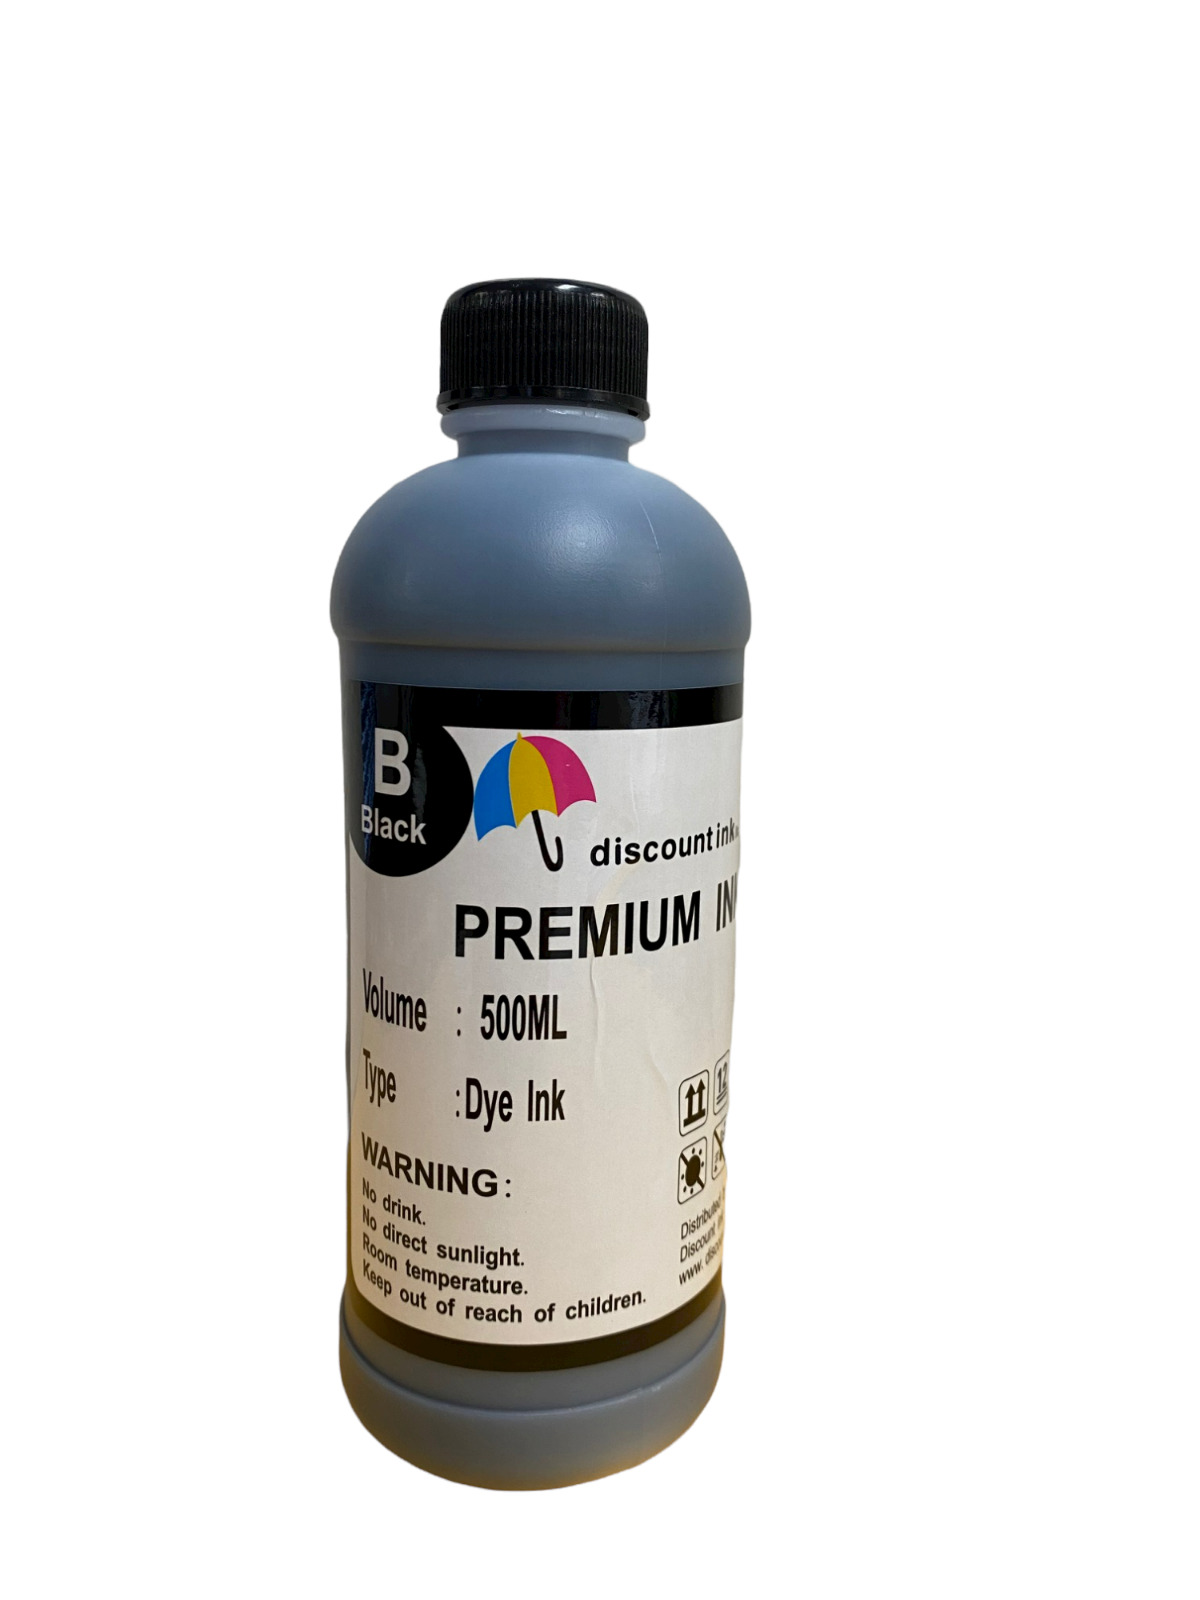  Black Bulk Refill Ink 500ml Bottle Dye Color for All Inkjet Printer Cartridge